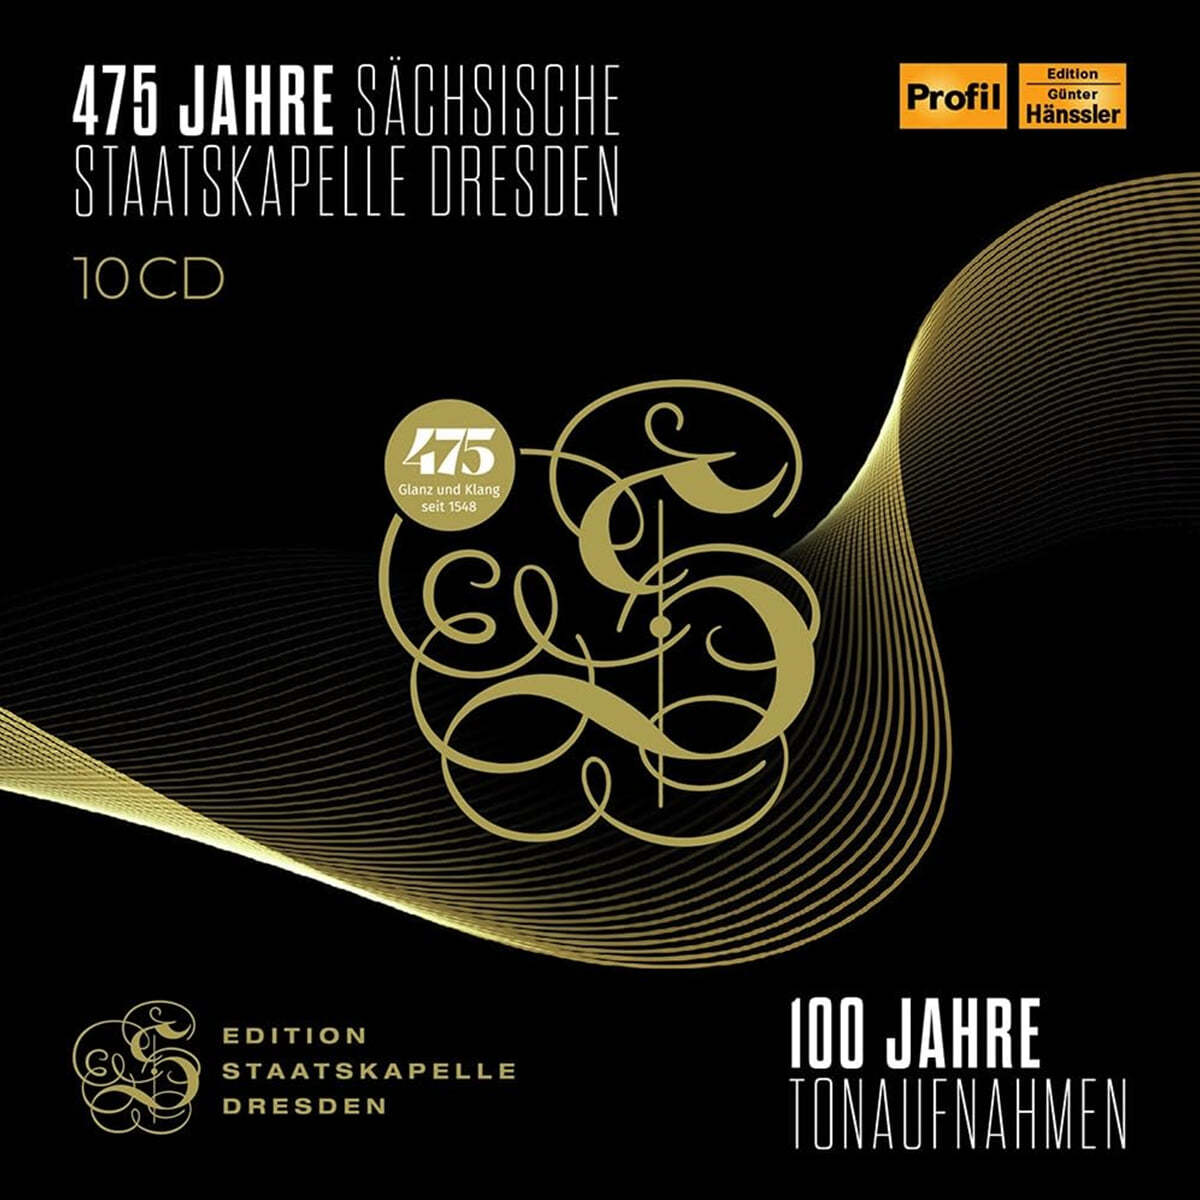 슈타츠카펠레 드레스덴의 100년 녹음사 1923~2023 (475 Jahre Sachsische Staatskapelle Dresden)